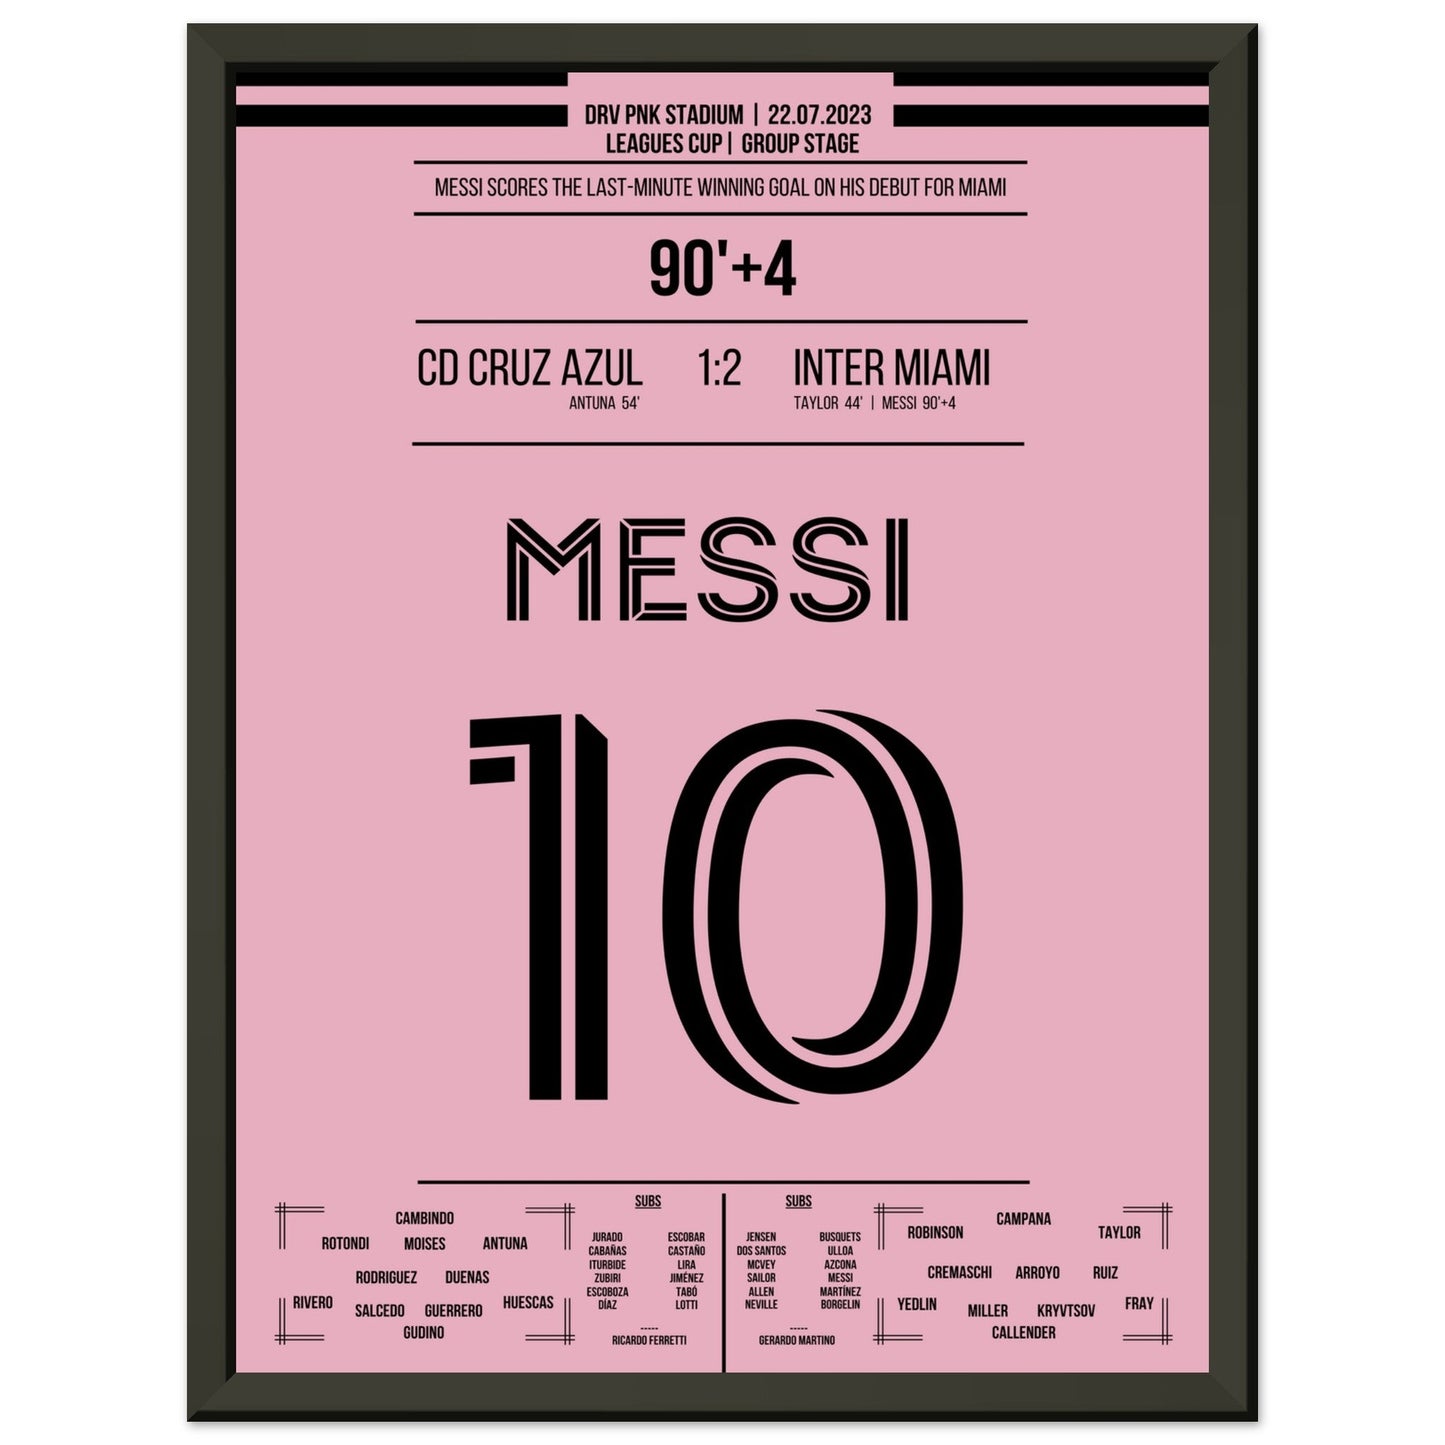 Messi's Siegtreffer beim Debüt für Miami